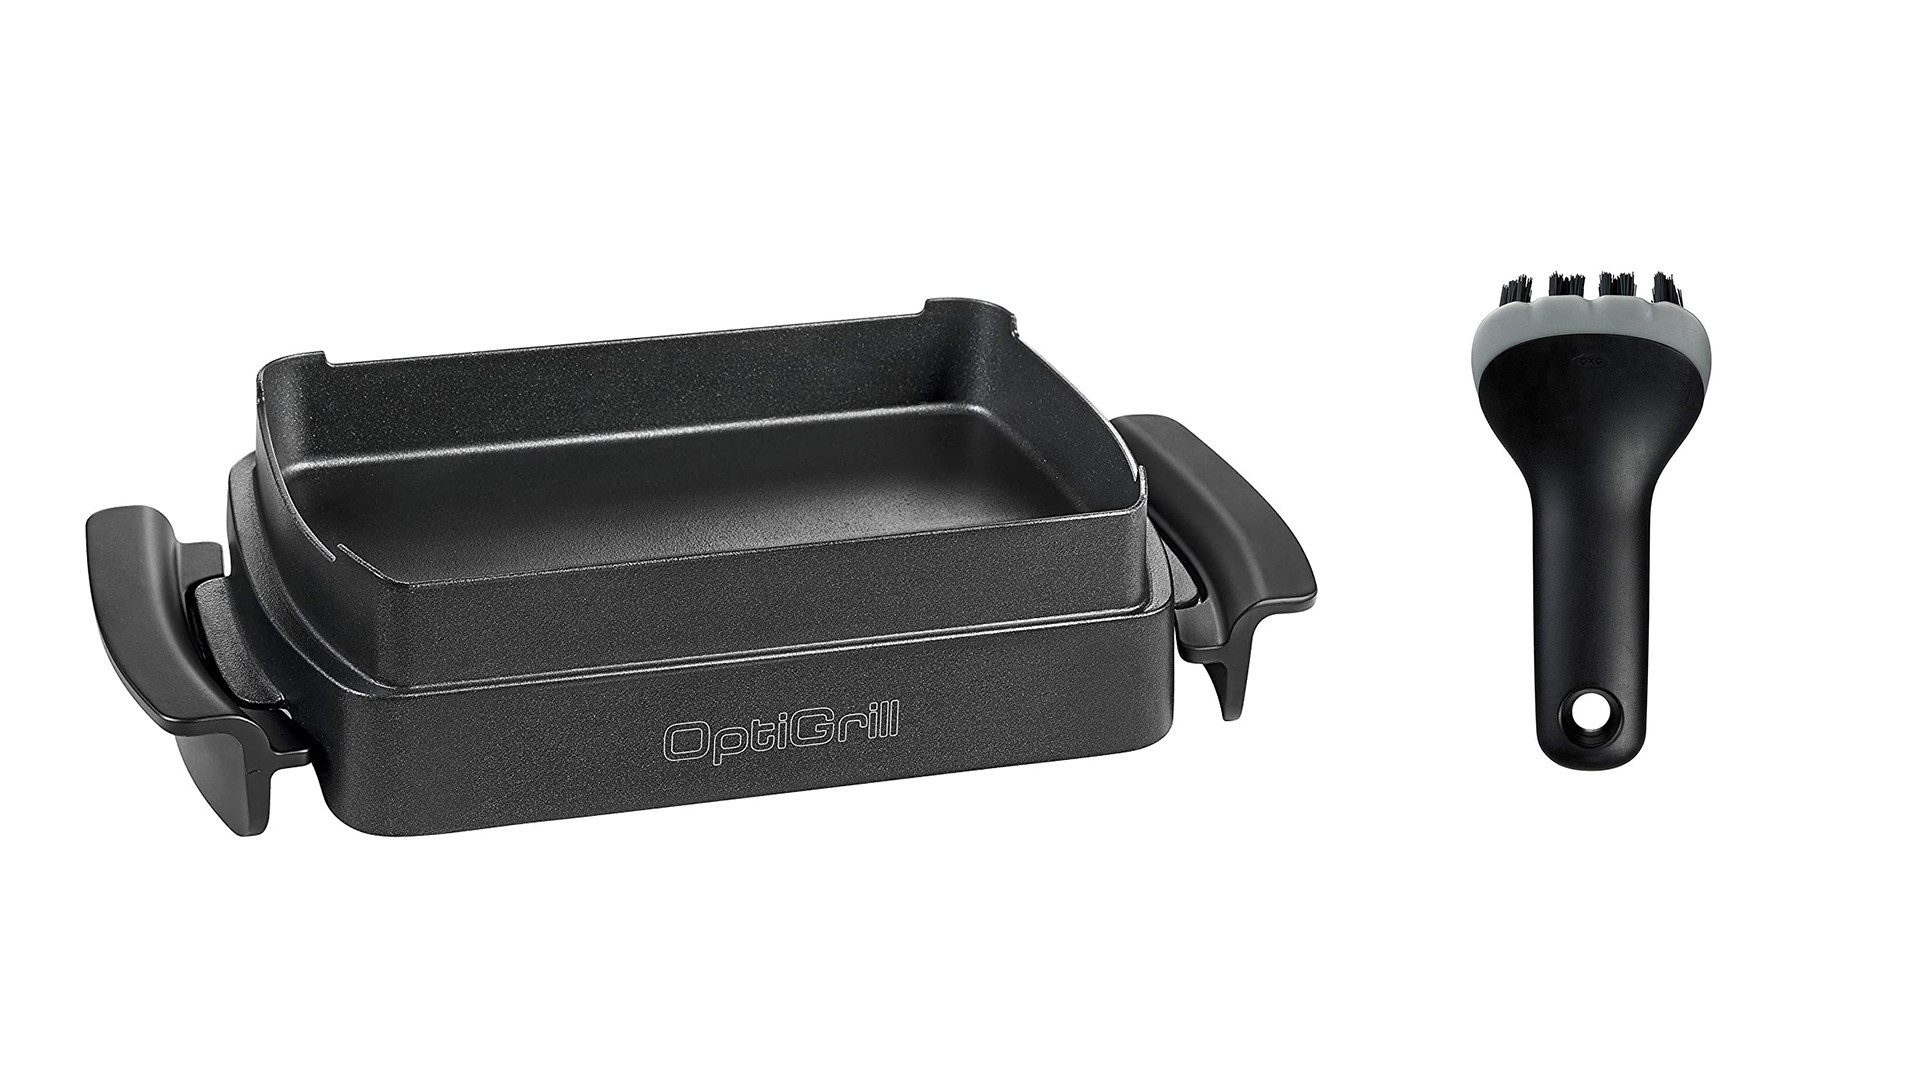 Tefal Backeinsatz XA7258 Snacking & Baking für den OptiGrill, und OXO Good Grips Grillbürste